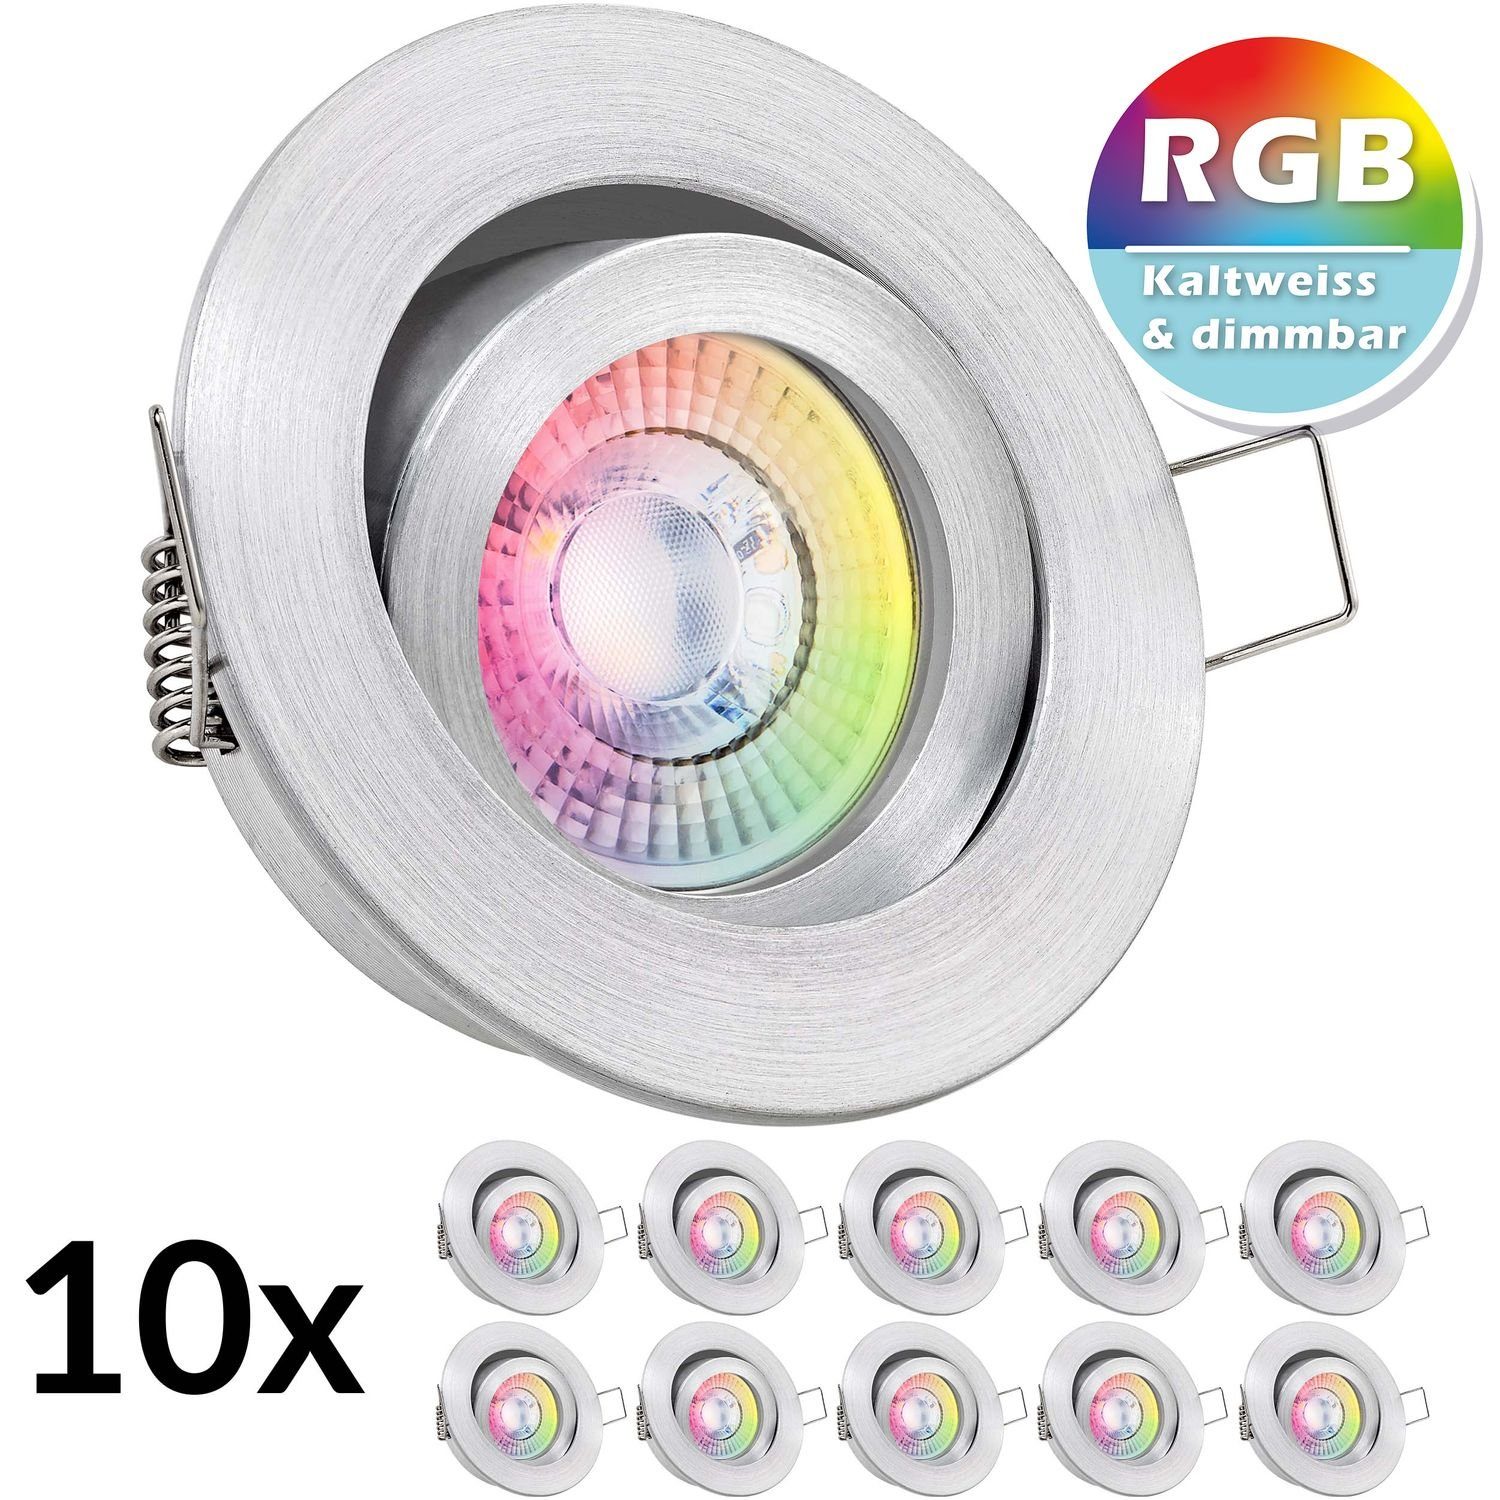 LEDANDO LED Einbaustrahler 10er RGB LED Einbaustrahler Set extra flach in aluminium natur mit 3W | Strahler